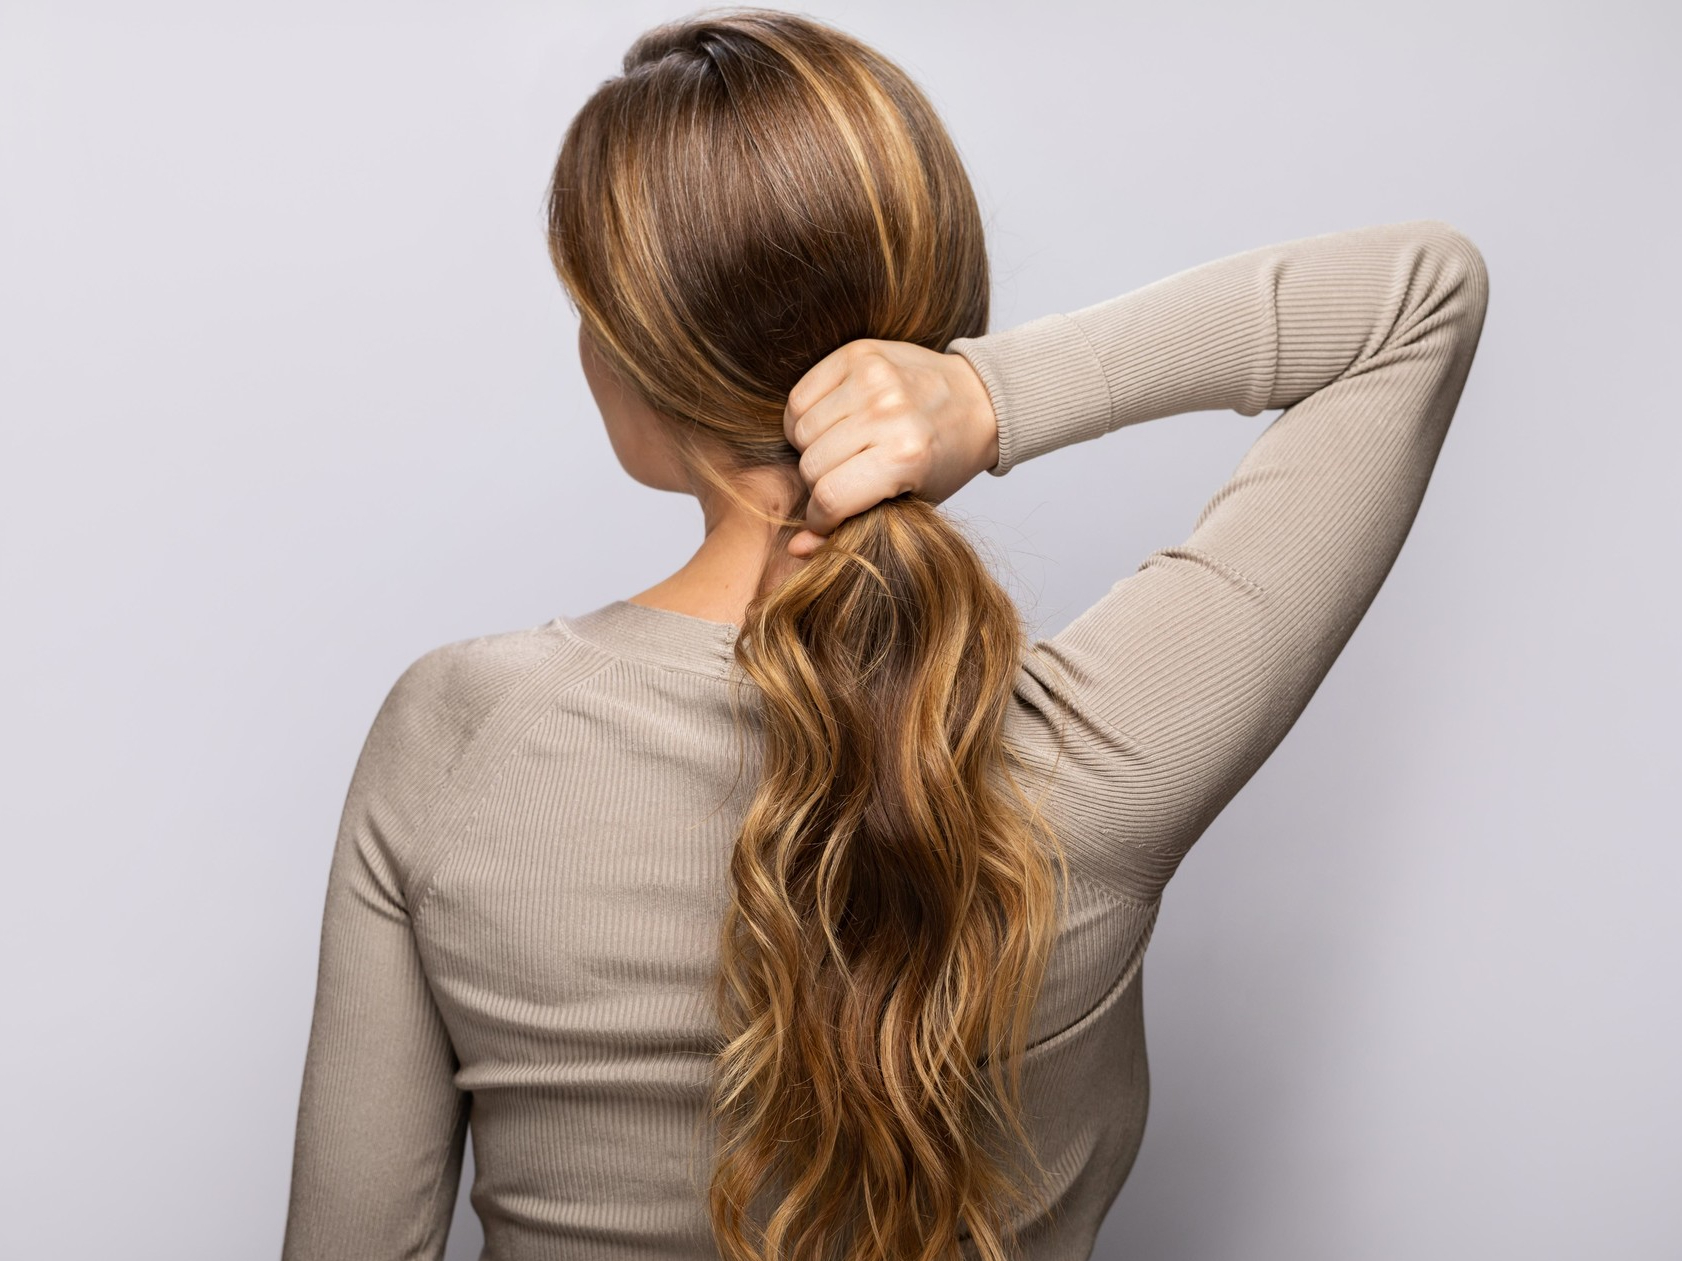 Седые волосы: причины ранней седины и как вернуть цвет